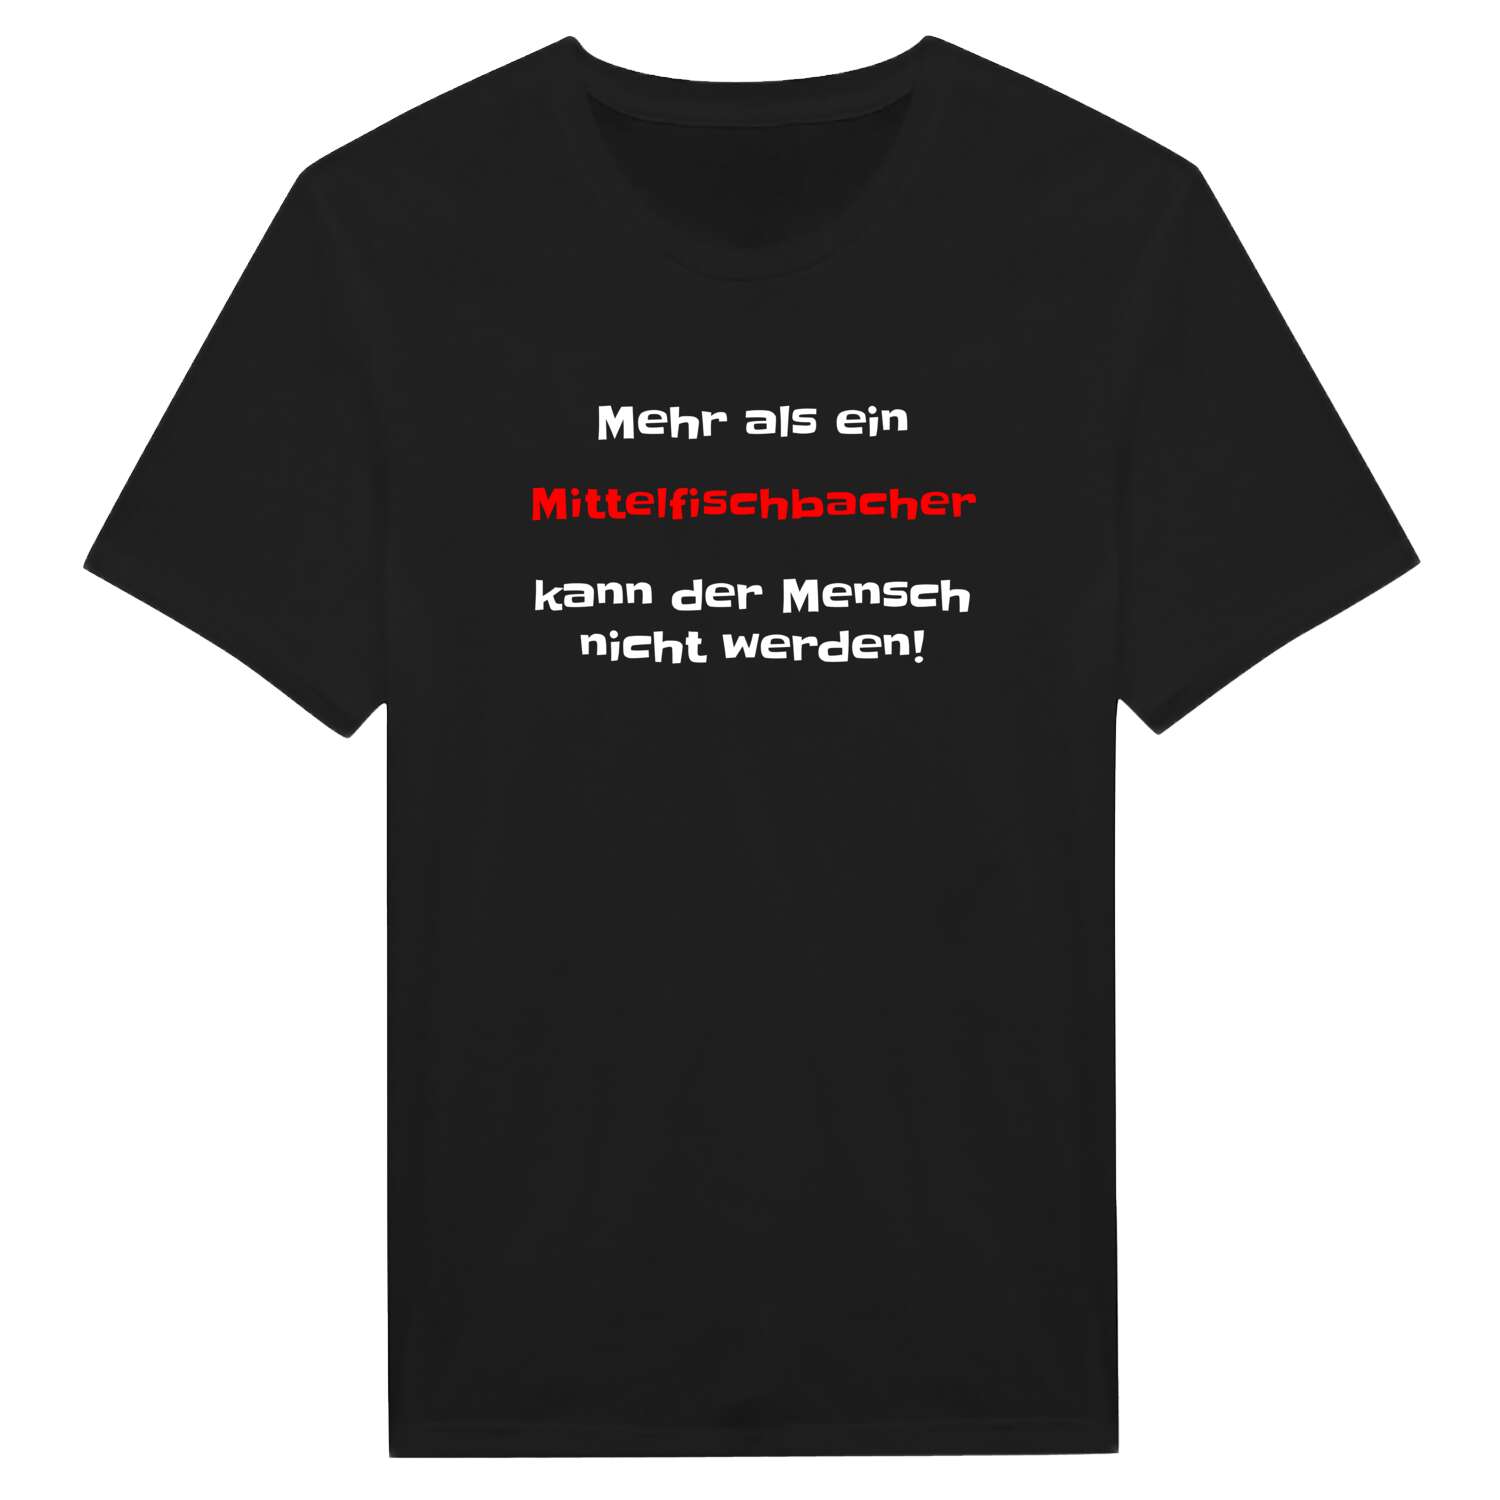 Mittelfischbach T-Shirt »Mehr als ein«